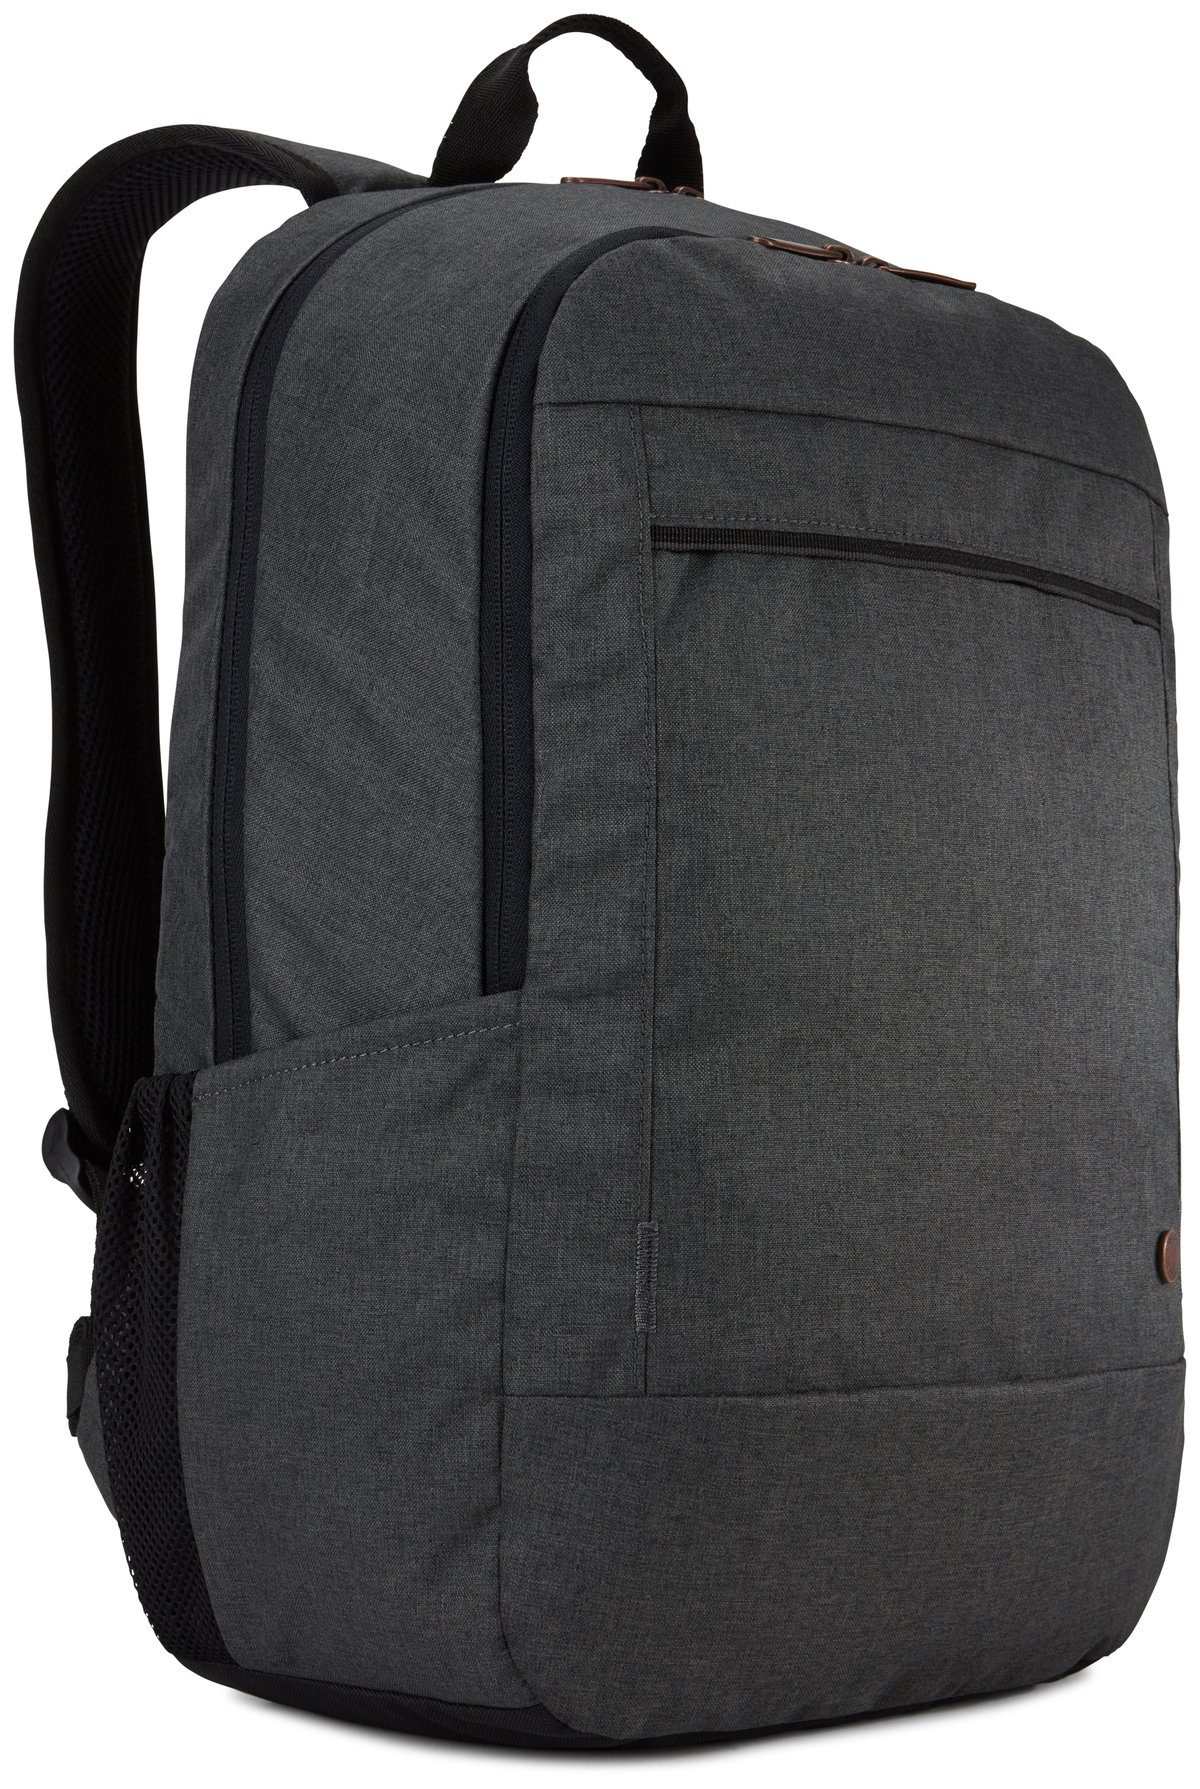 Case Logic Notebookrucksack Era Backpack 15.6 OBSIDIAN